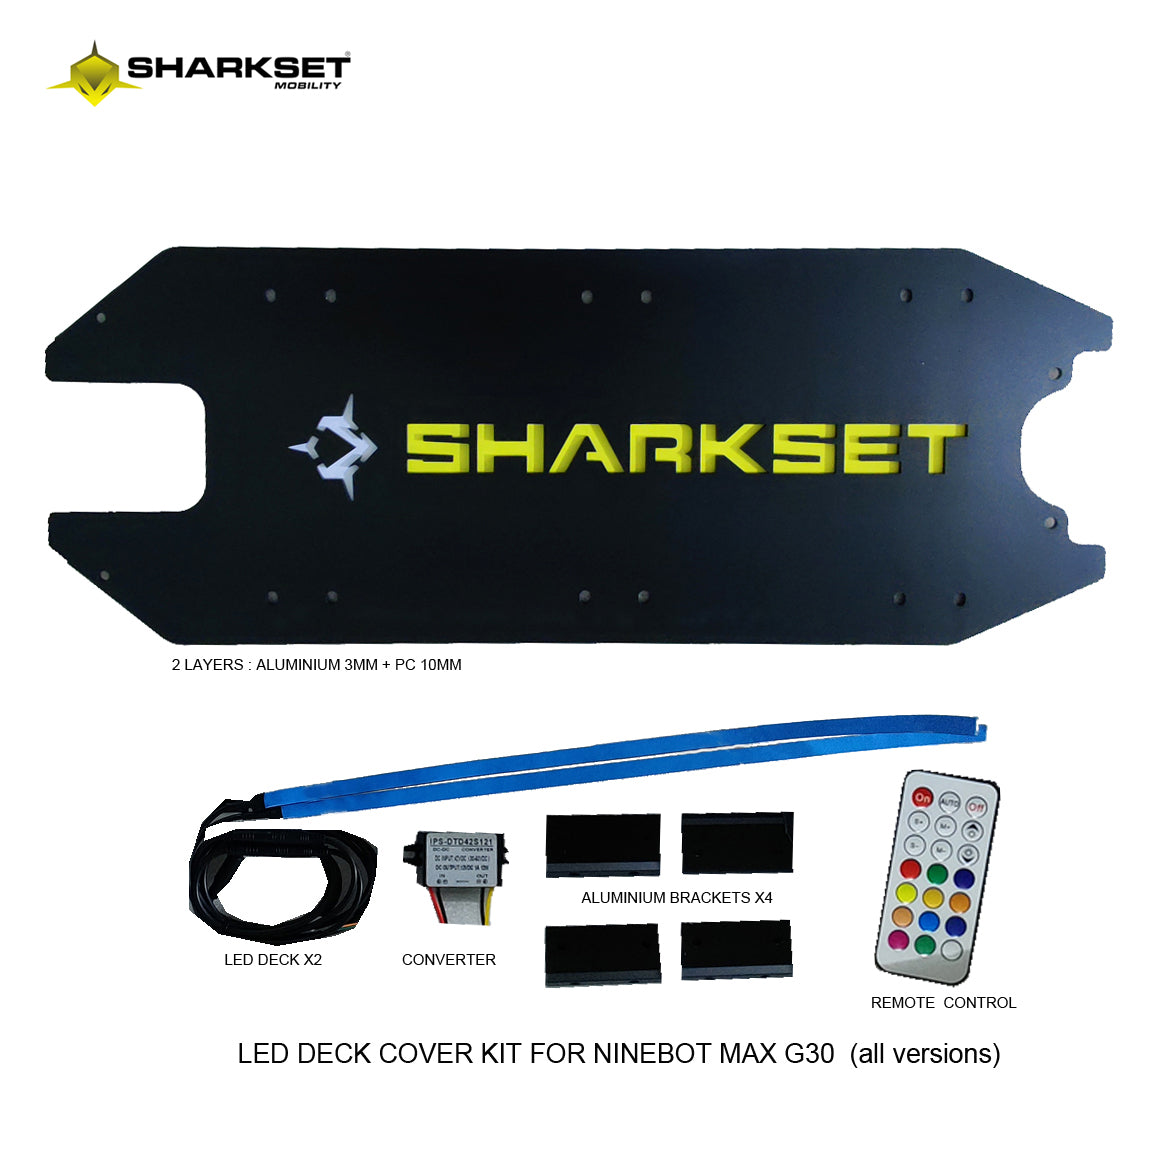 SHARKSET Beleuchtetes LED-Deck, Ninebot Max G30“ 